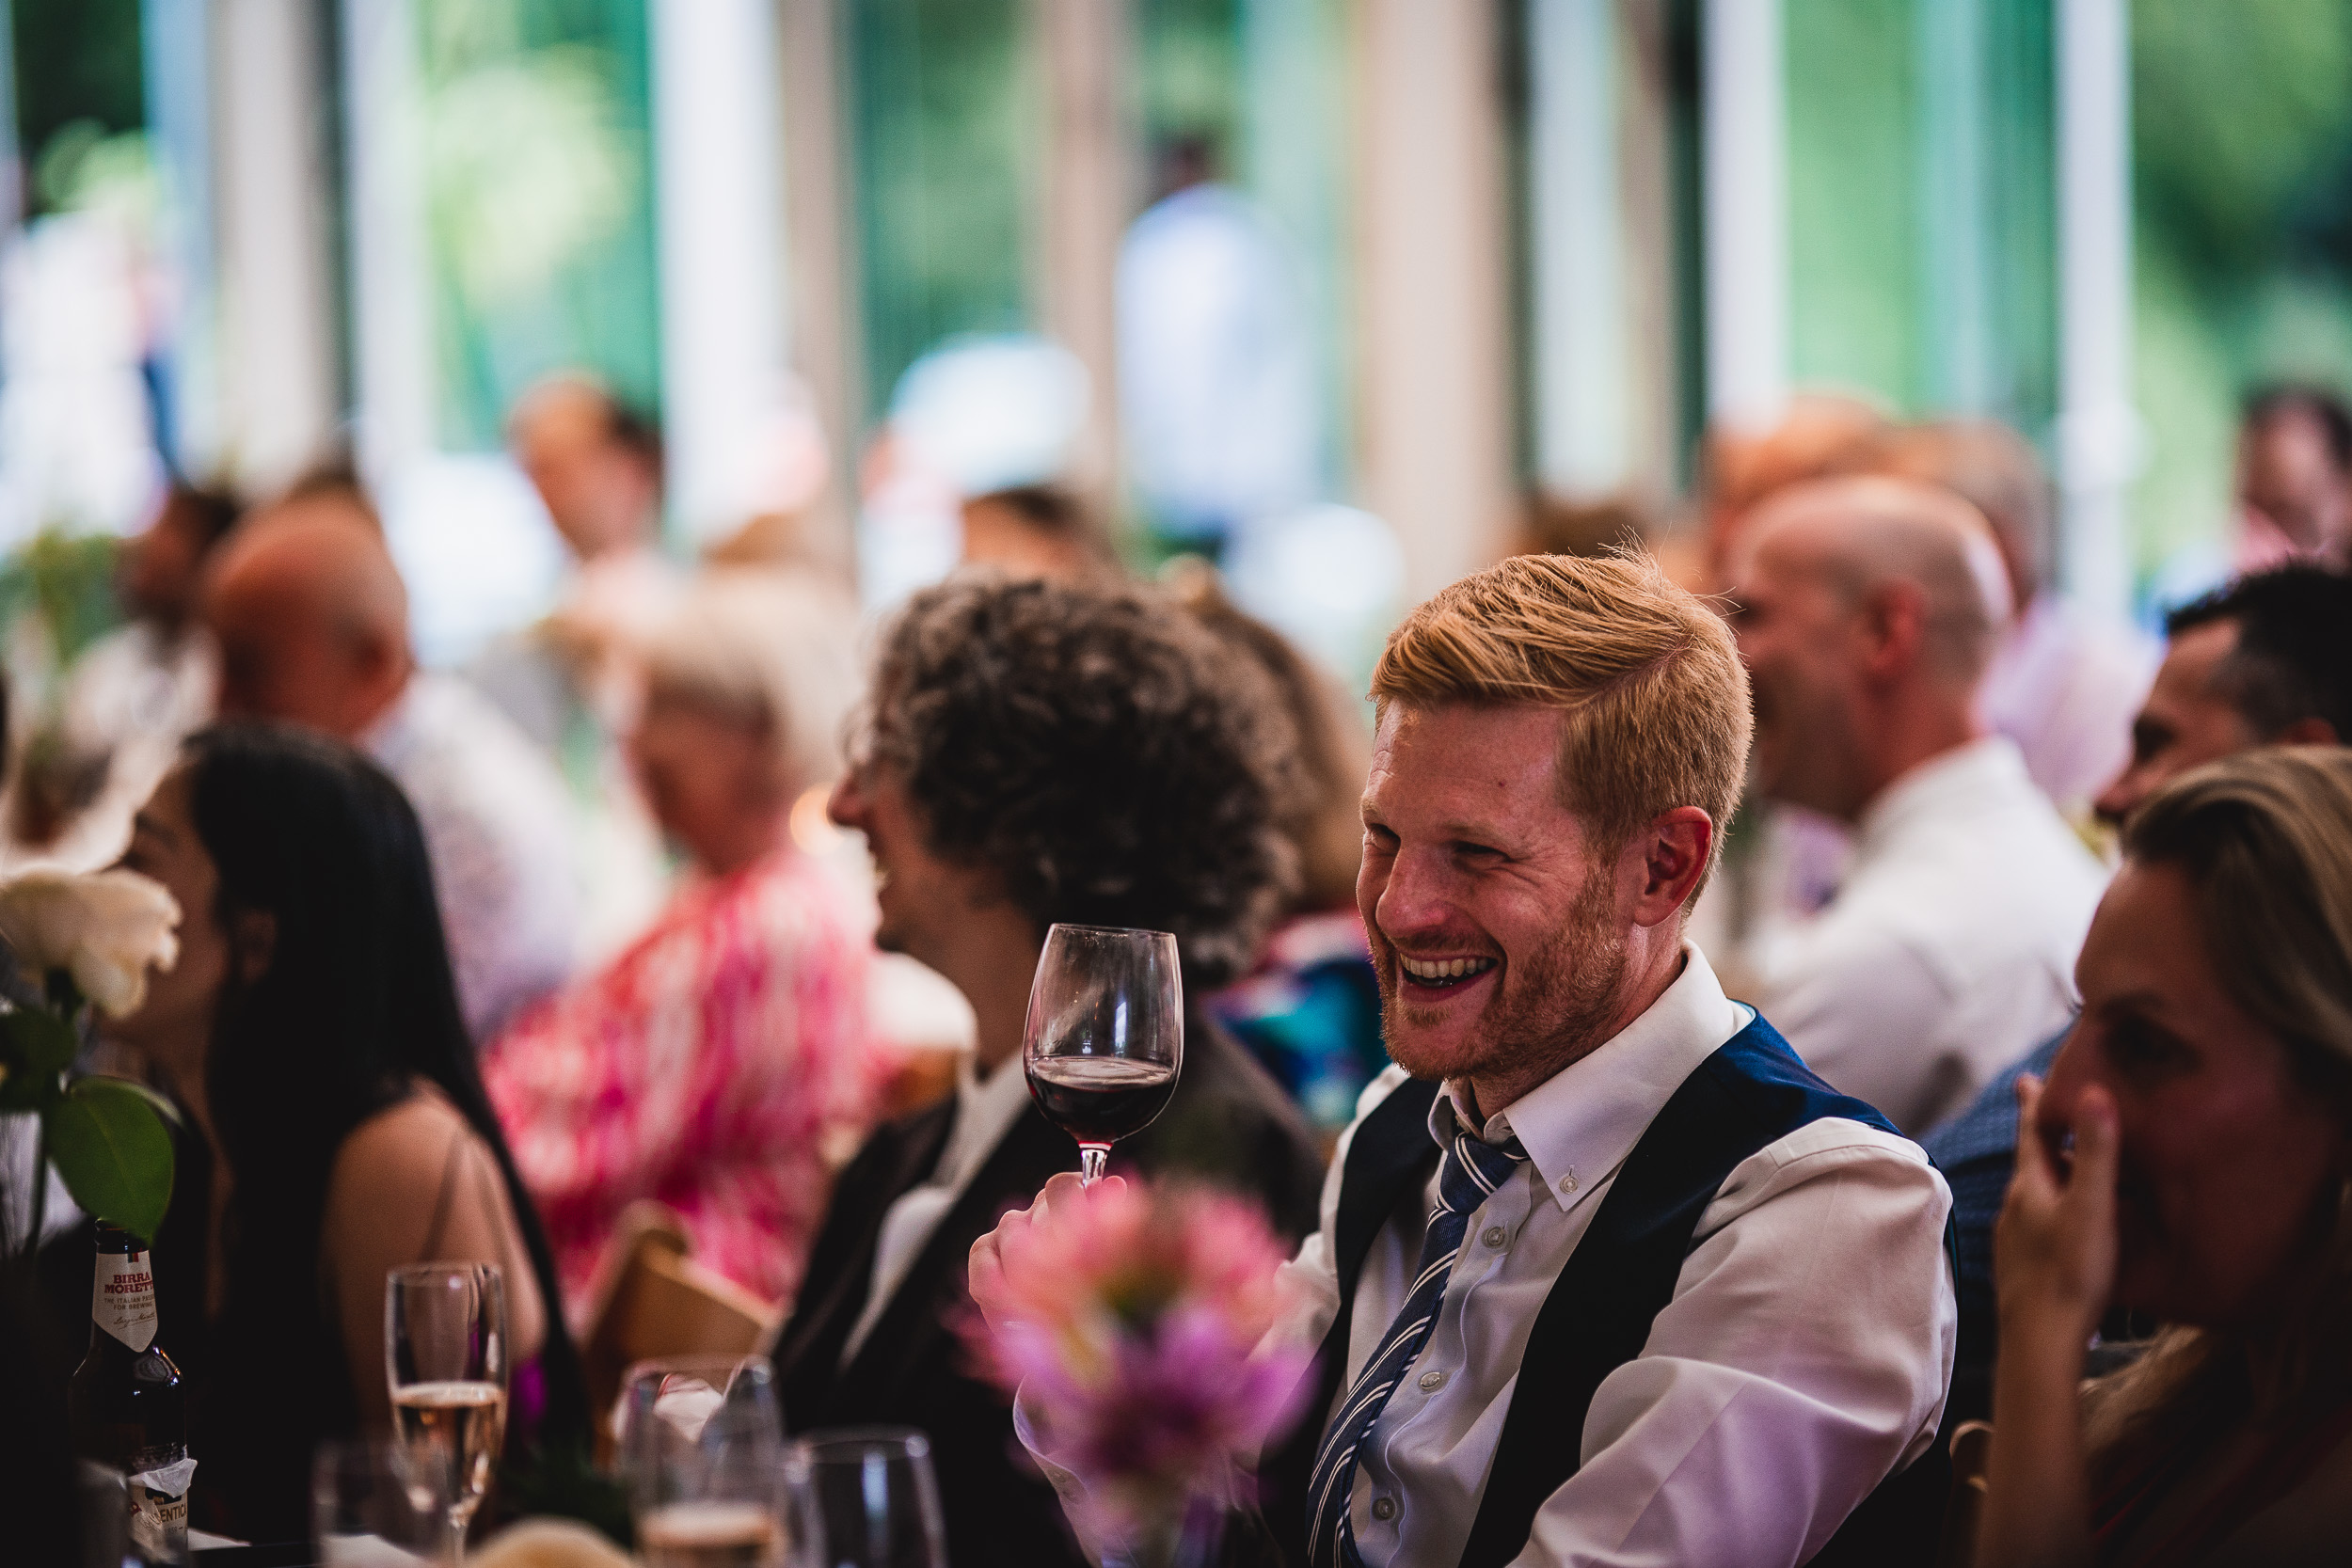 A man laughing at a Surrey wedding reception at Ridge Farm.